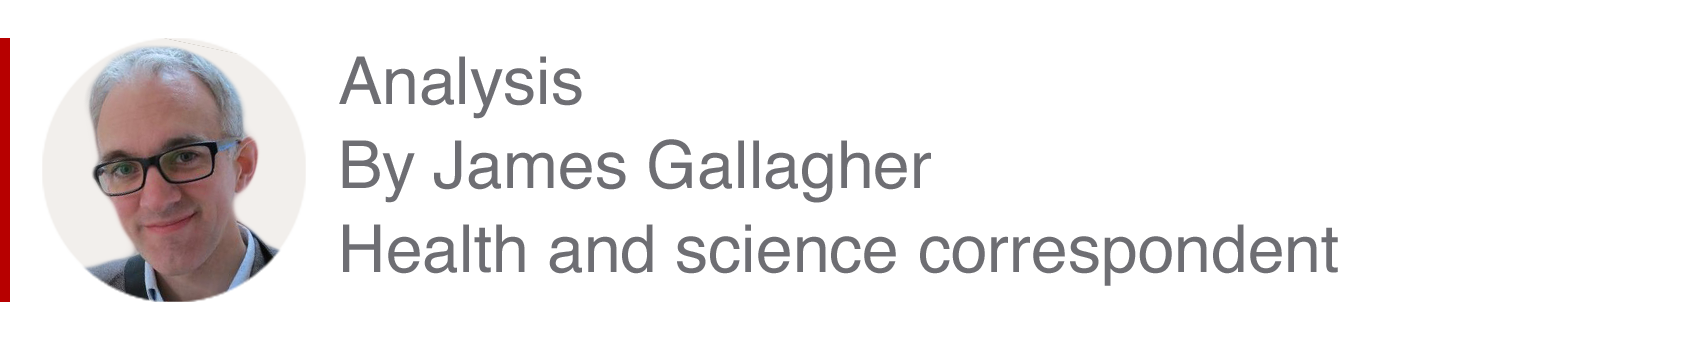 Cuadro de análisis de James Gallagher, corresponsal de ciencia y salud